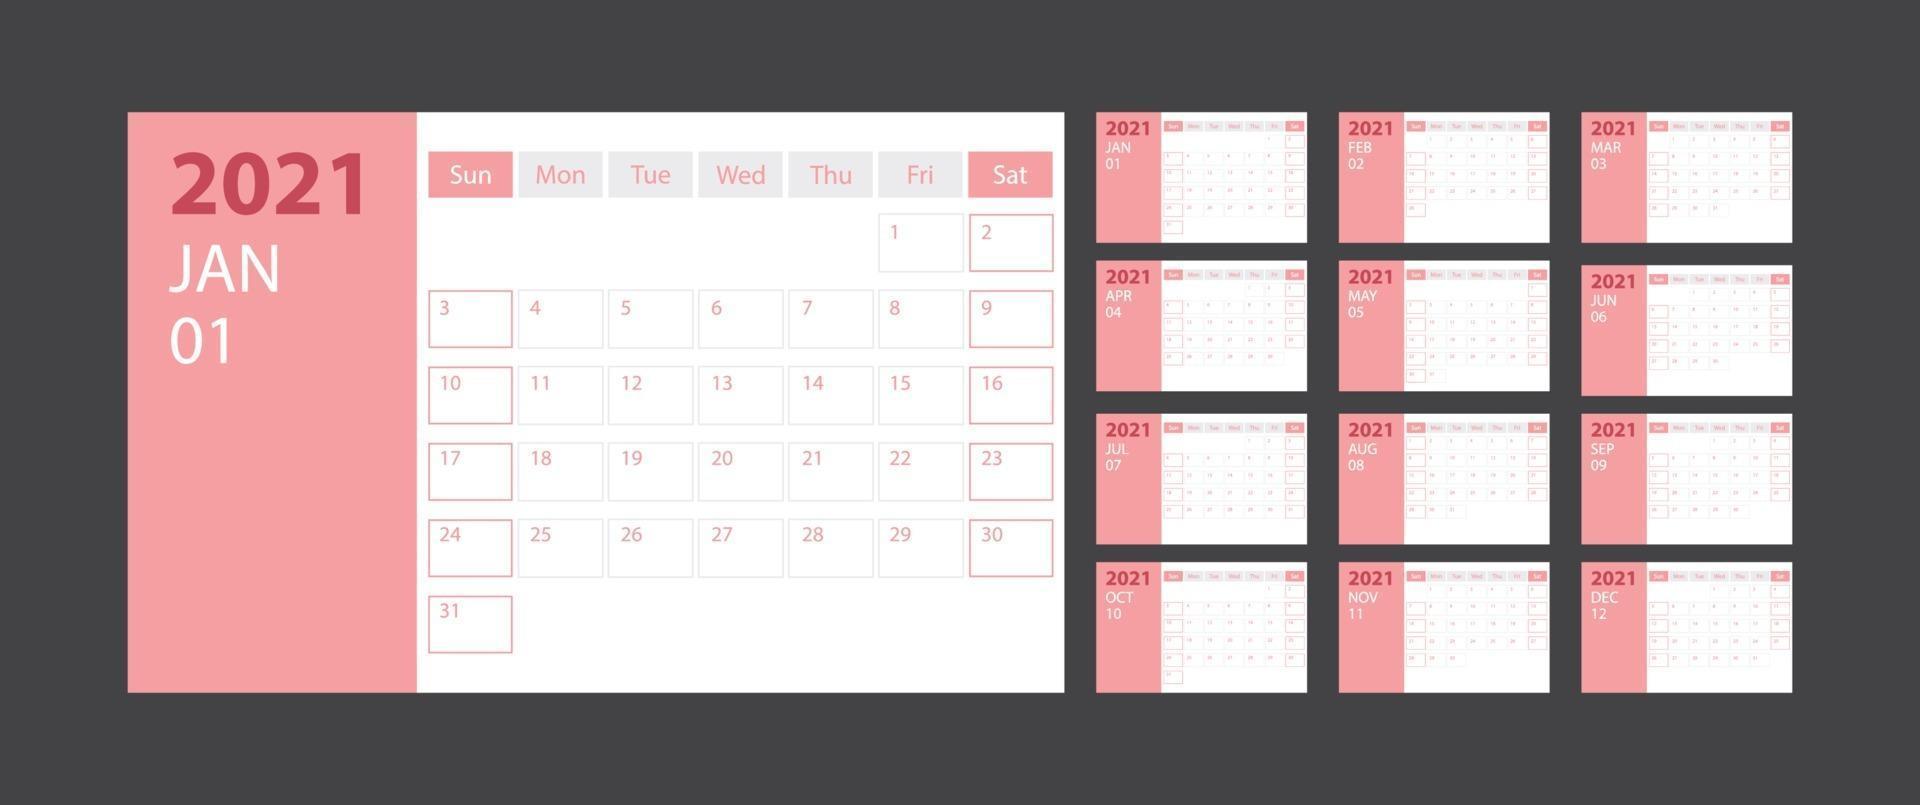 calendrier 2021 semaine début dimanche modèle de planificateur de conception d'entreprise avec thème rose vecteur